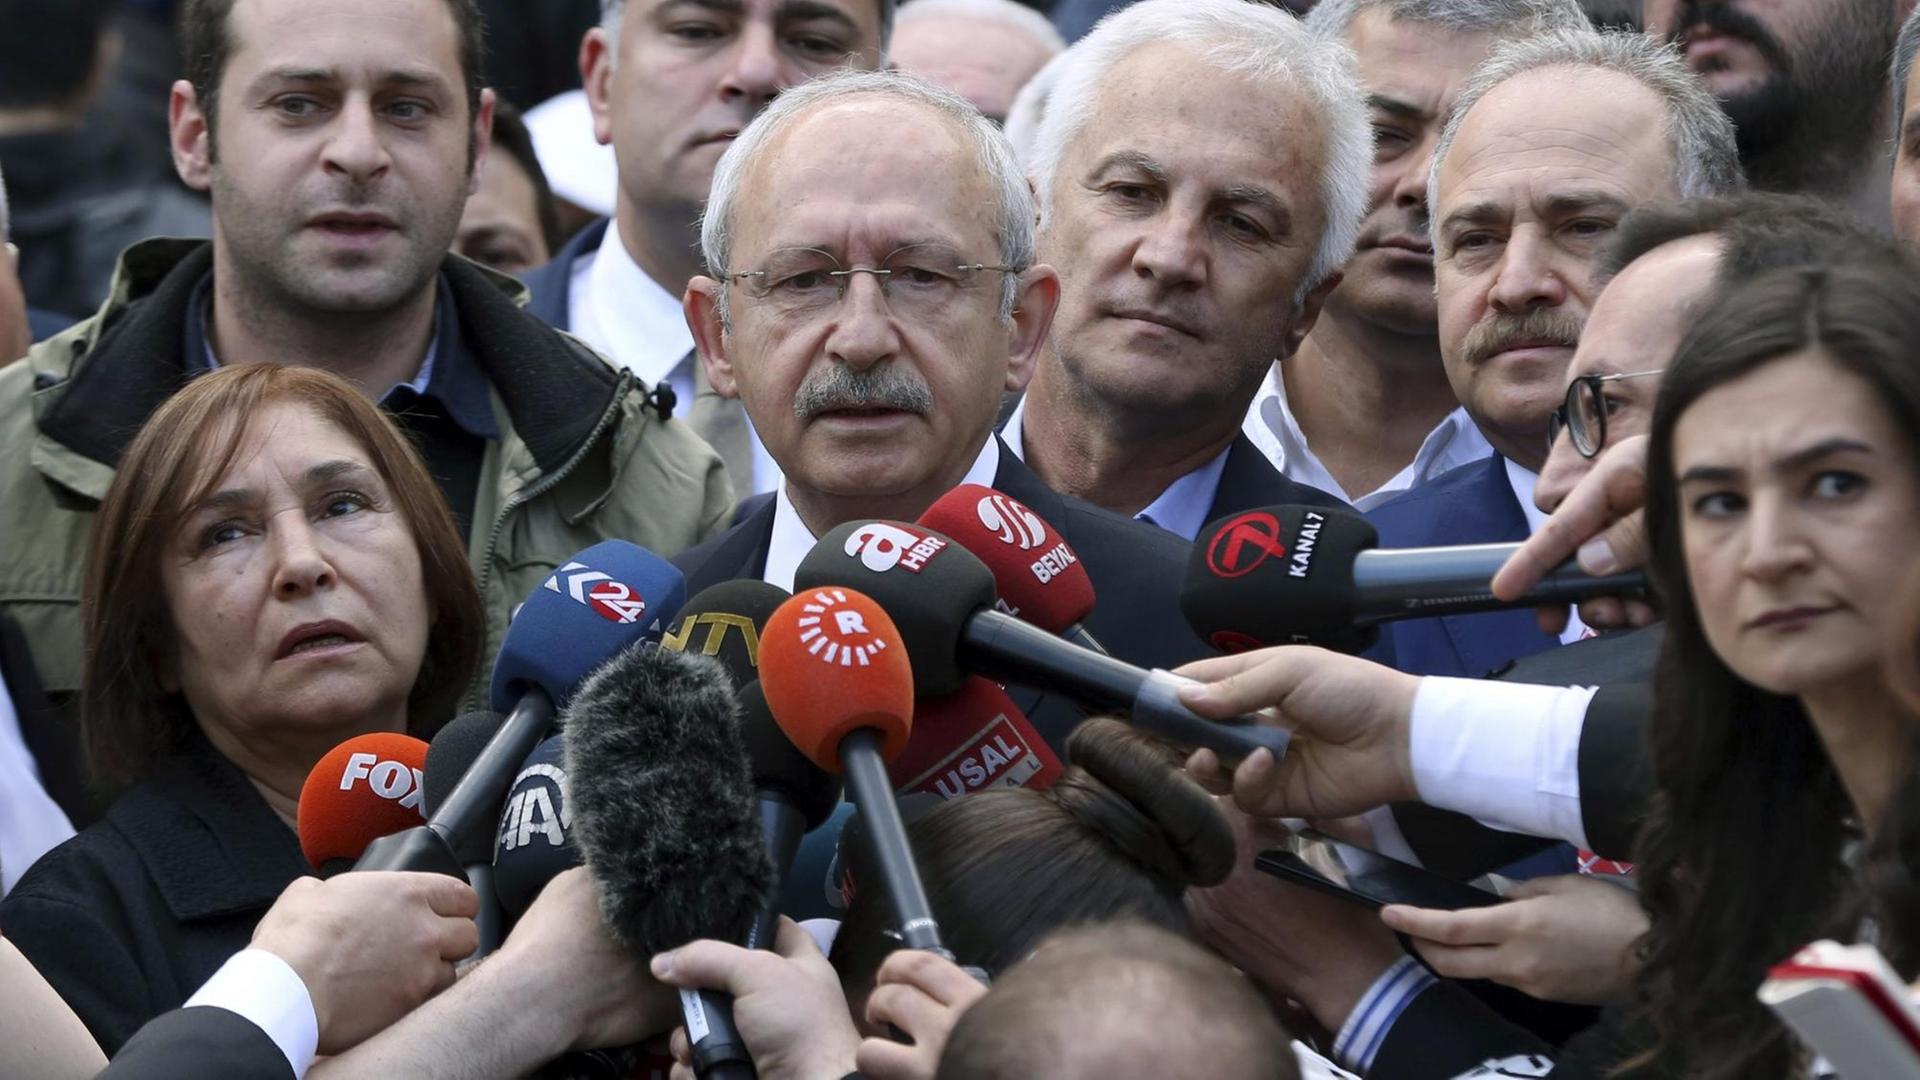 Der türkische Oppositionsführer und CHP-Chef Kemal Kilicdaroglu äußert sich vor Journalisten, nachdem er in einem Wahllokal in Ankara seine Stimme beim Referendum abgegeben hat.